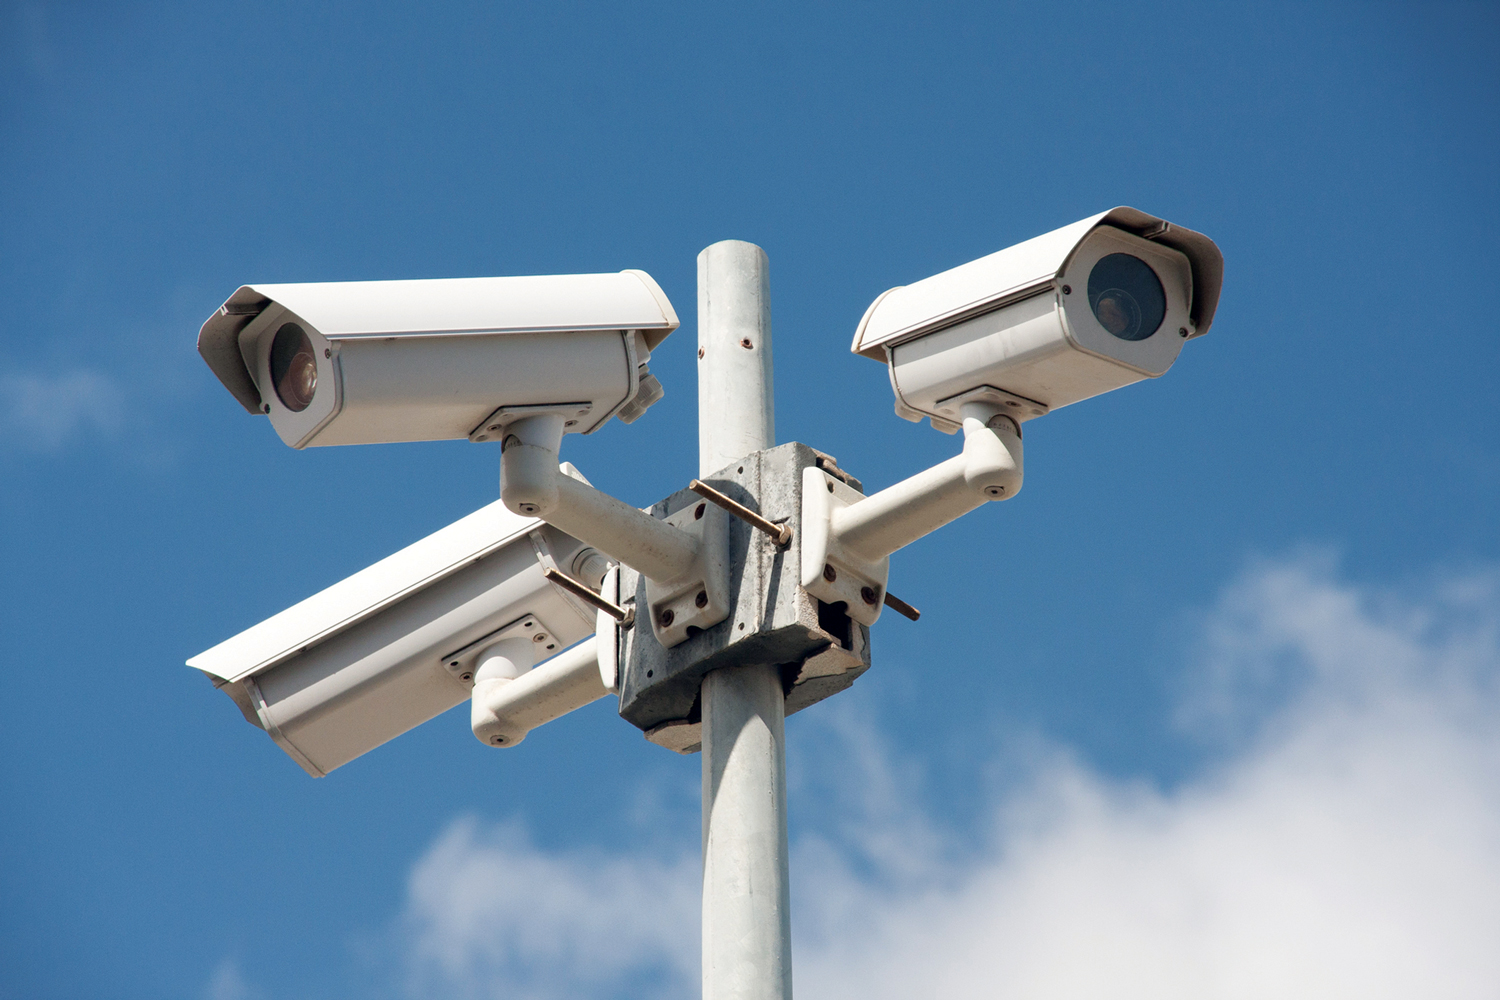 أفضل كاميرات المراقبة الخارجية بحمية منزلك لهذا العام 2021